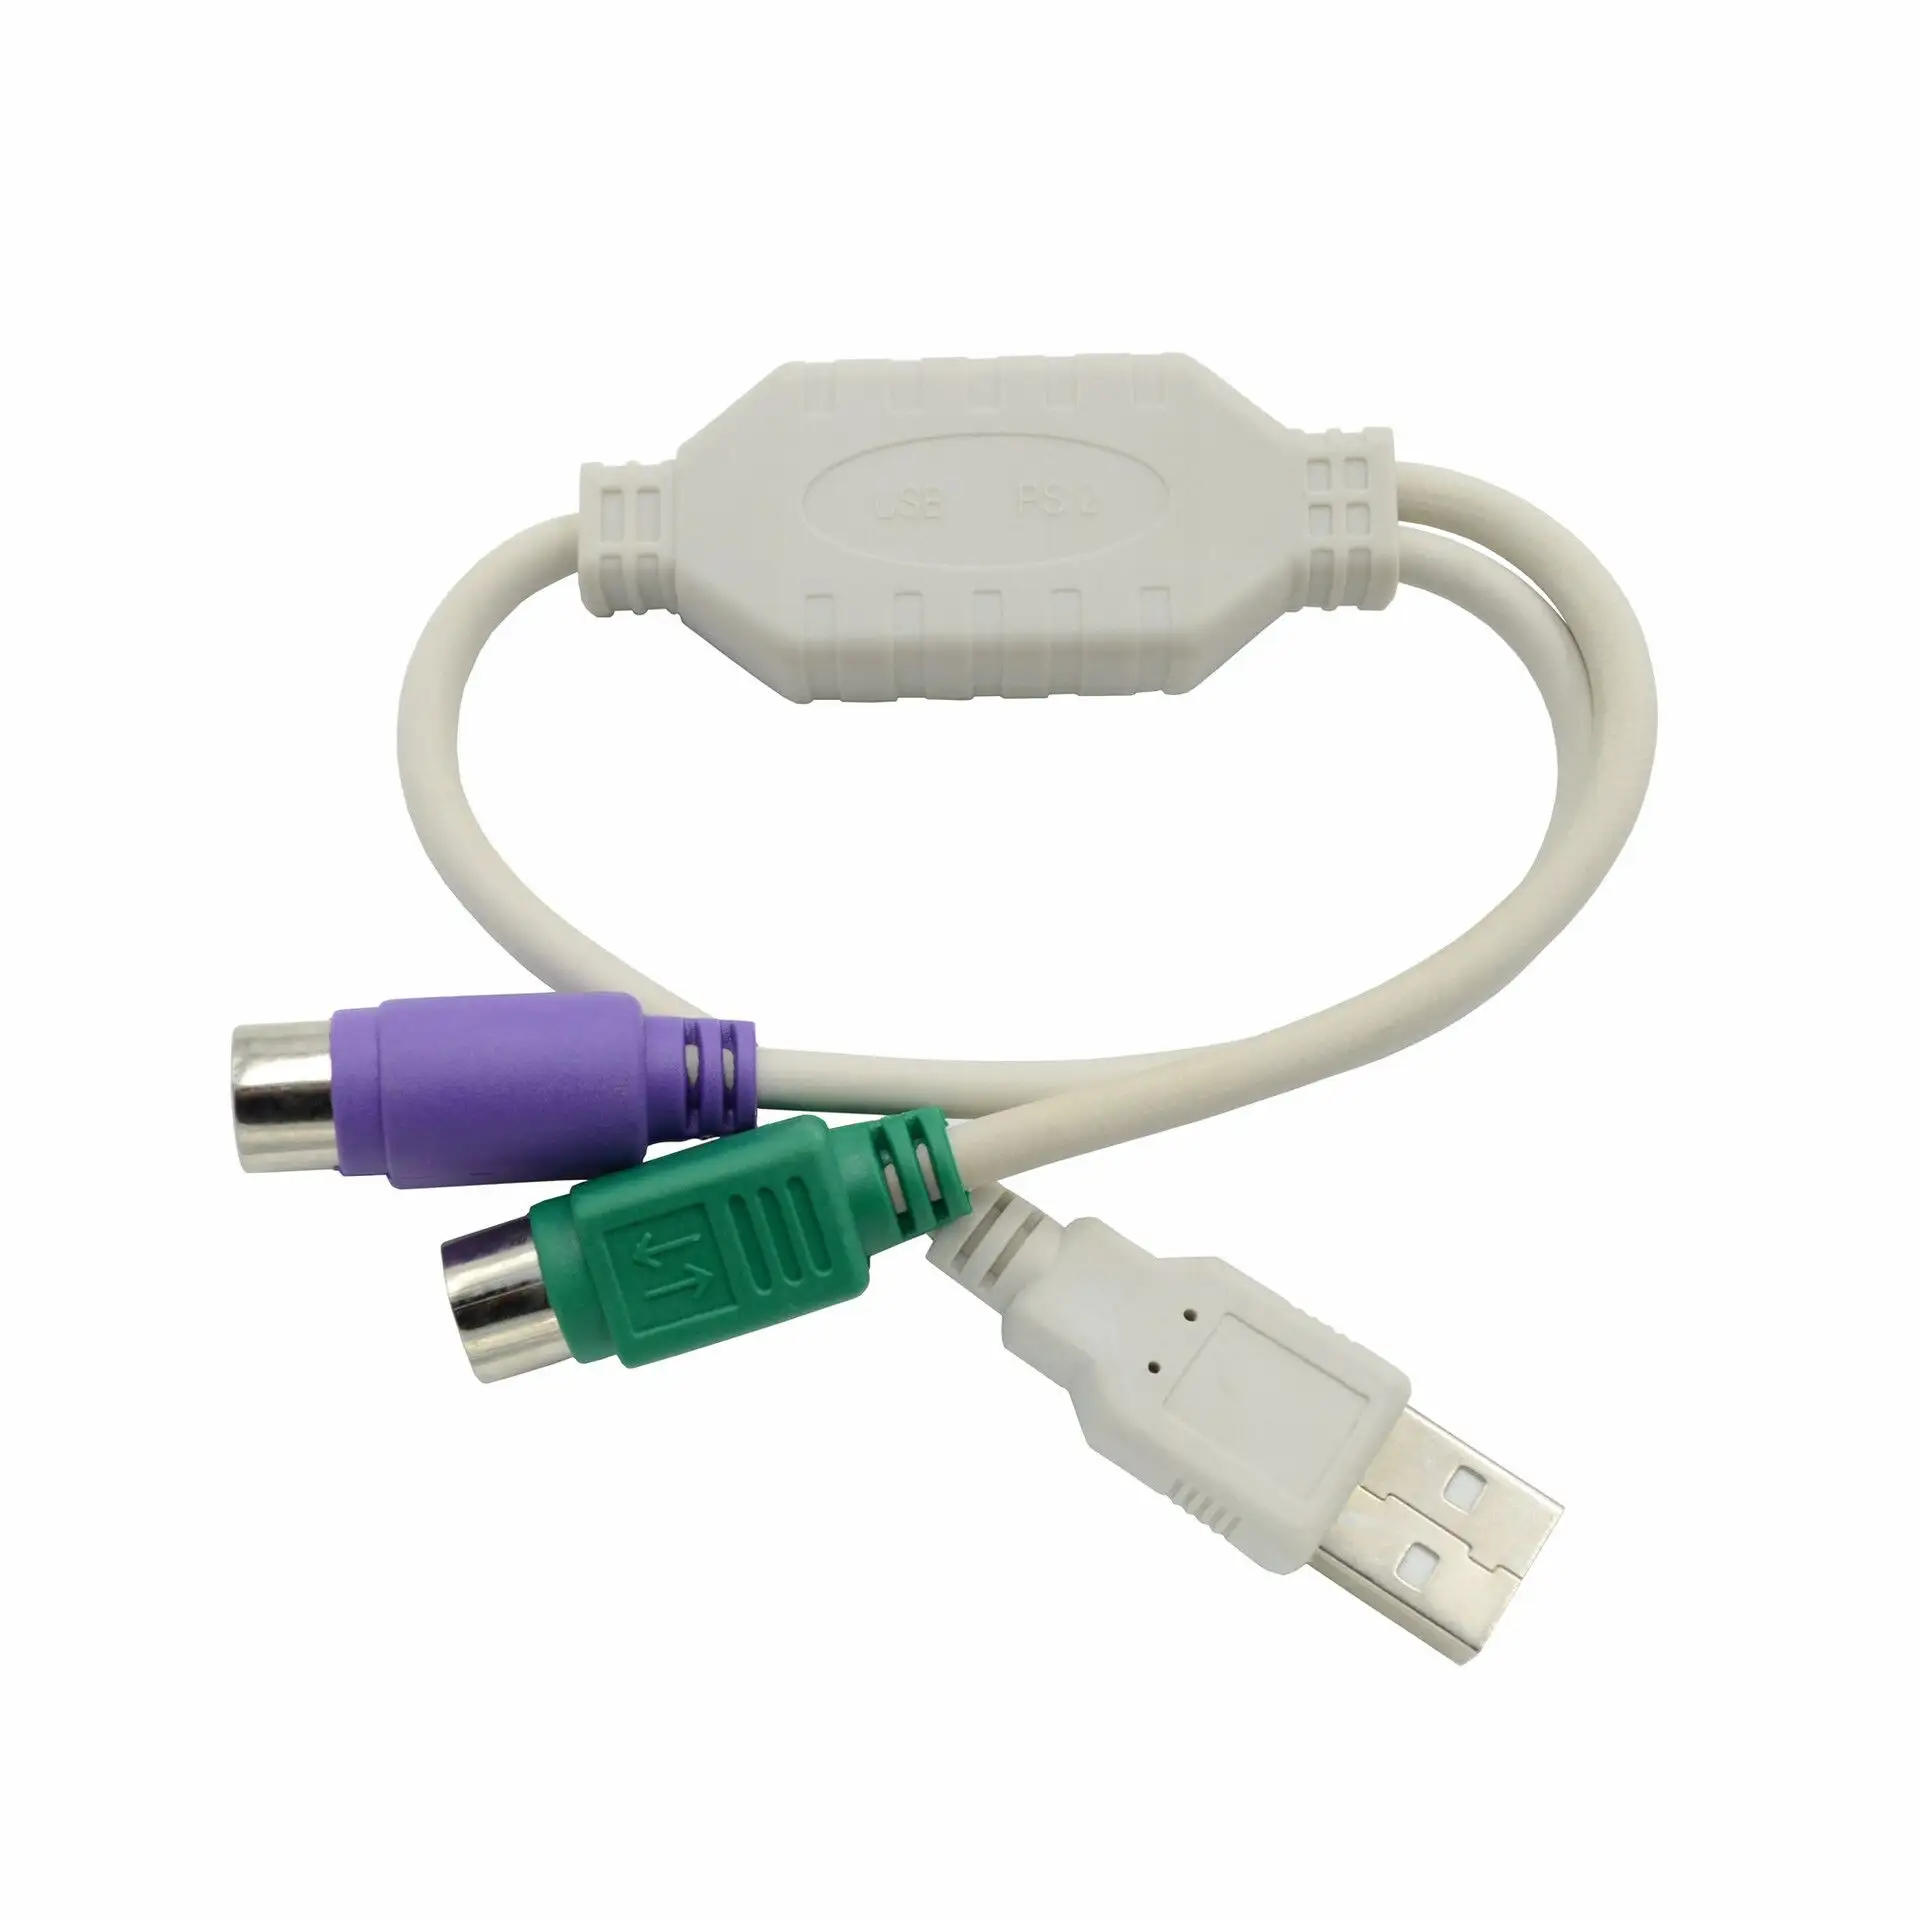 USB mâle à double PS2 femelle câble F/M adaptateur convertisseur pour ordinateur PC ordinateur portable clavier souris